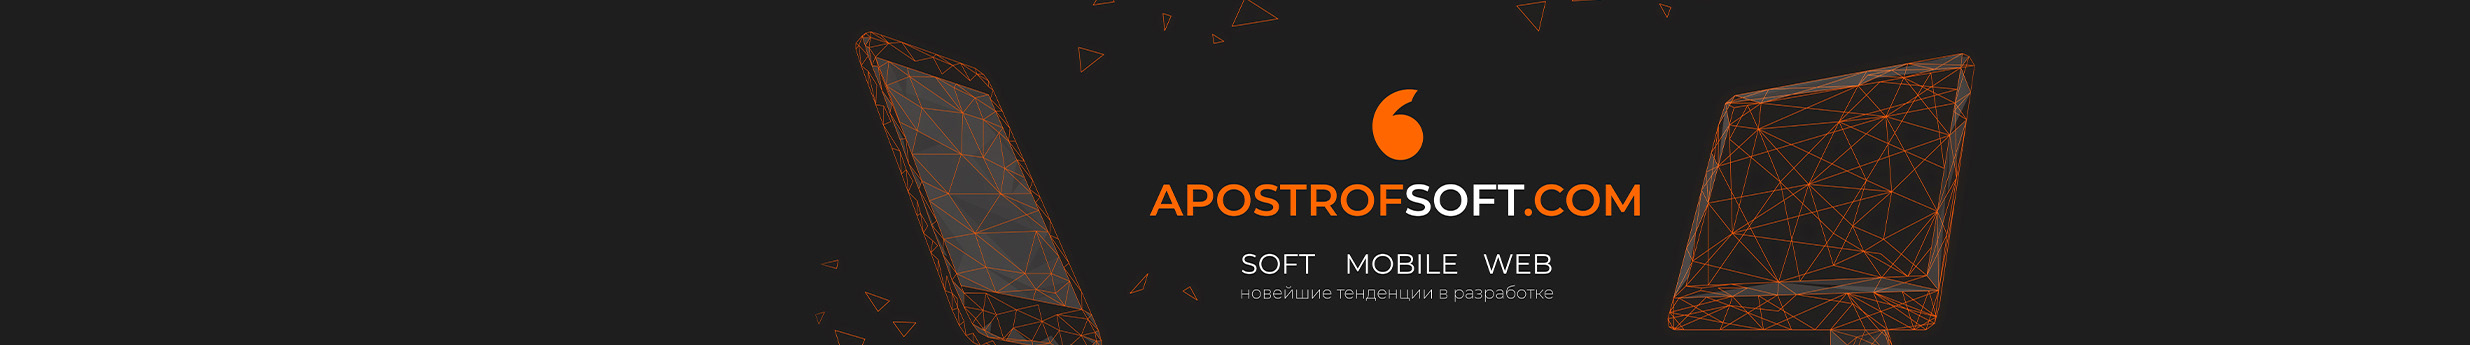 ApostrofSoft Company's profile banner